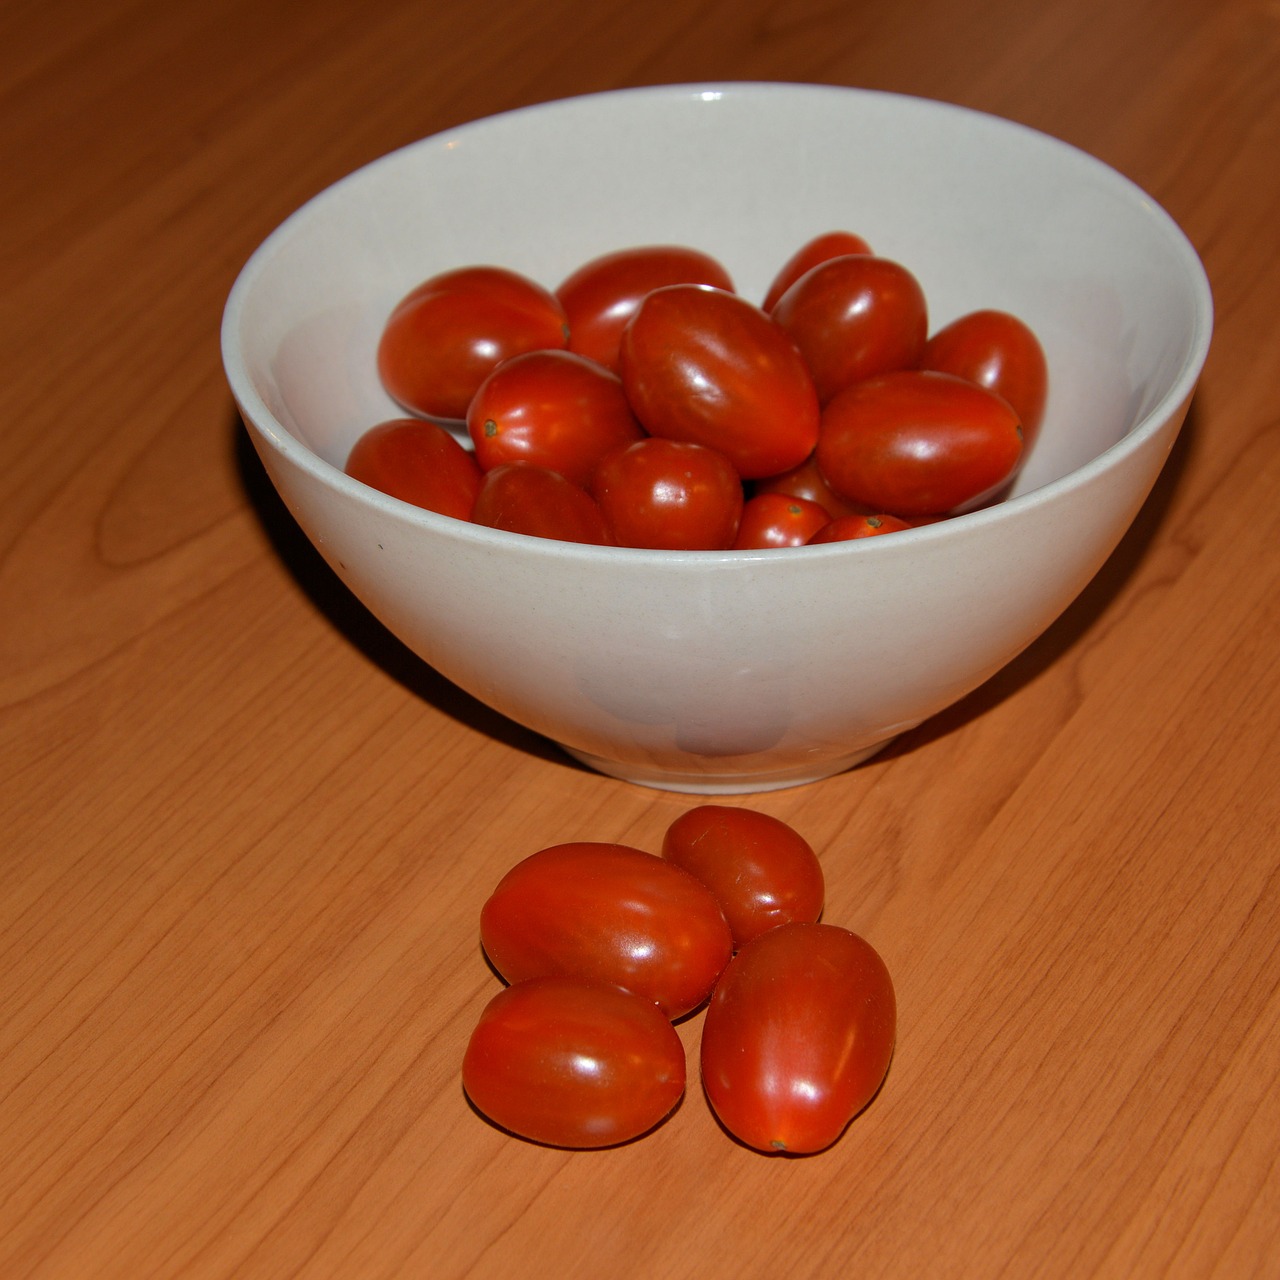 snack tomatoes mini tomatoes tomatoes free photo